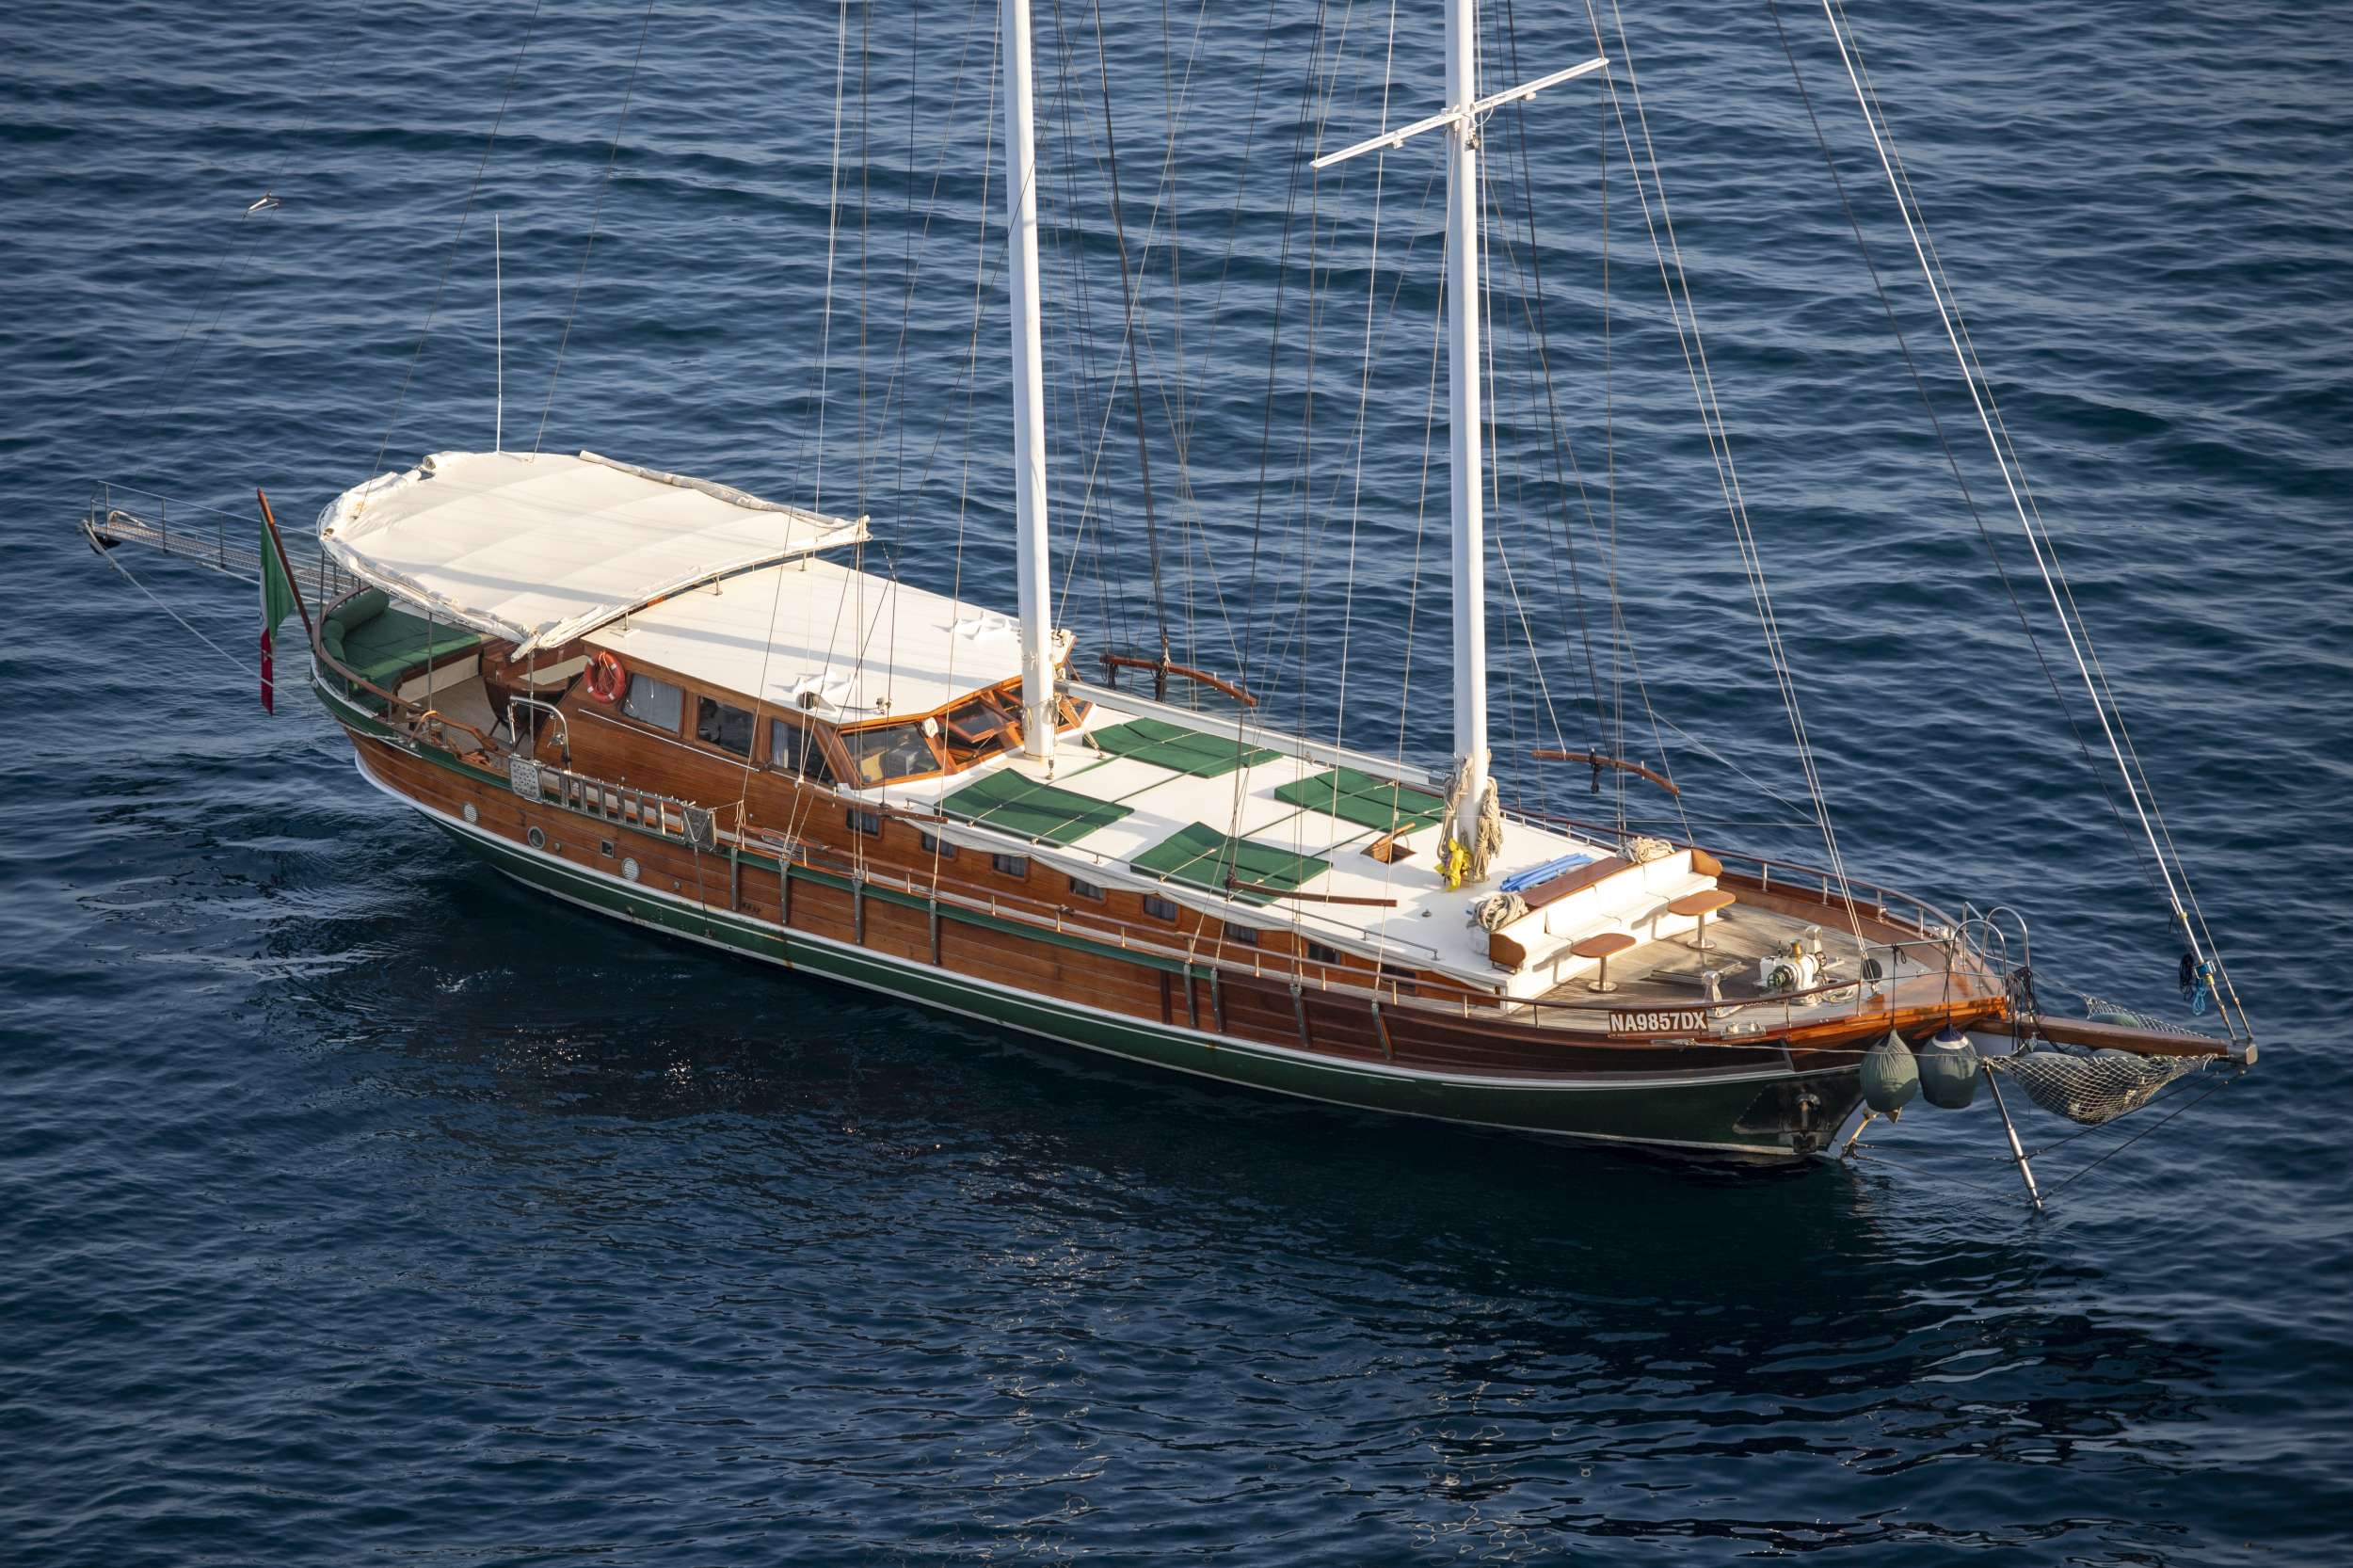 DERIYA DENIZ - Motor Boat Charter Sicily & Boat hire in Naples/Sicily 1